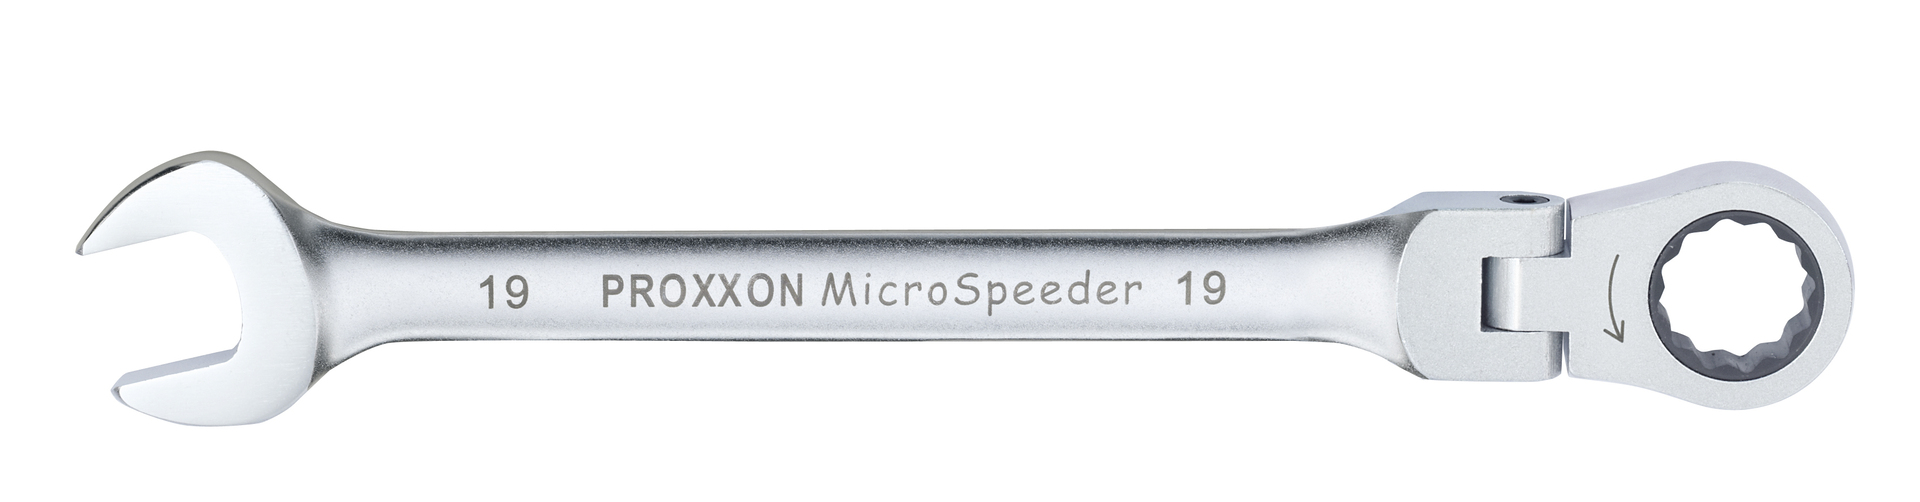 PROXXON GmbH MICRO-Combispeeder mit Gelenk